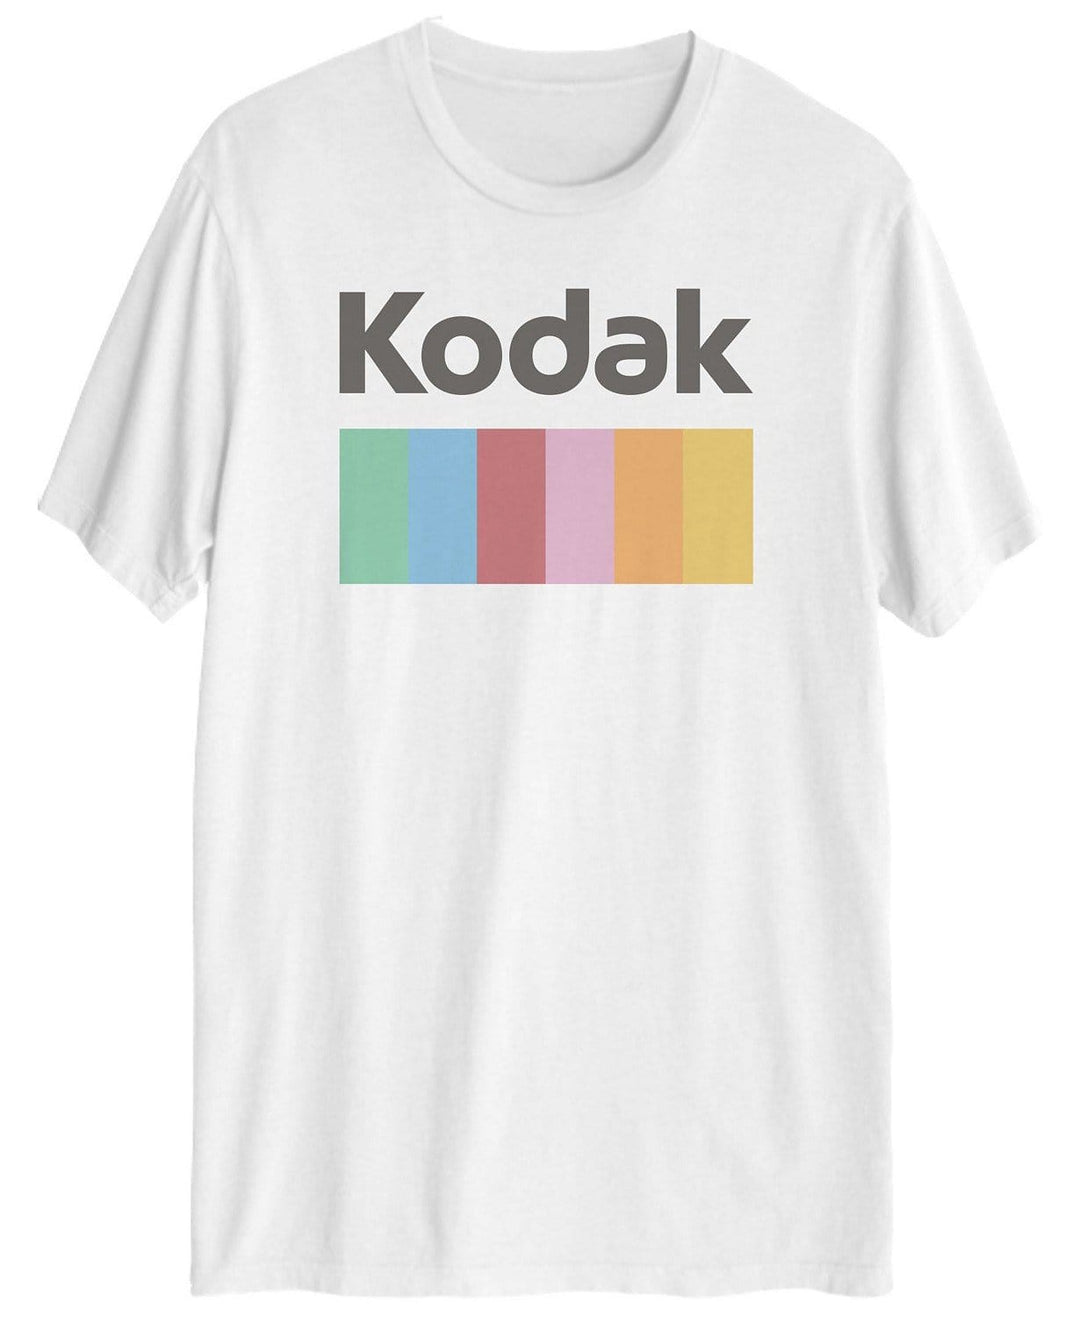 Kodak Graphic T-Shirt